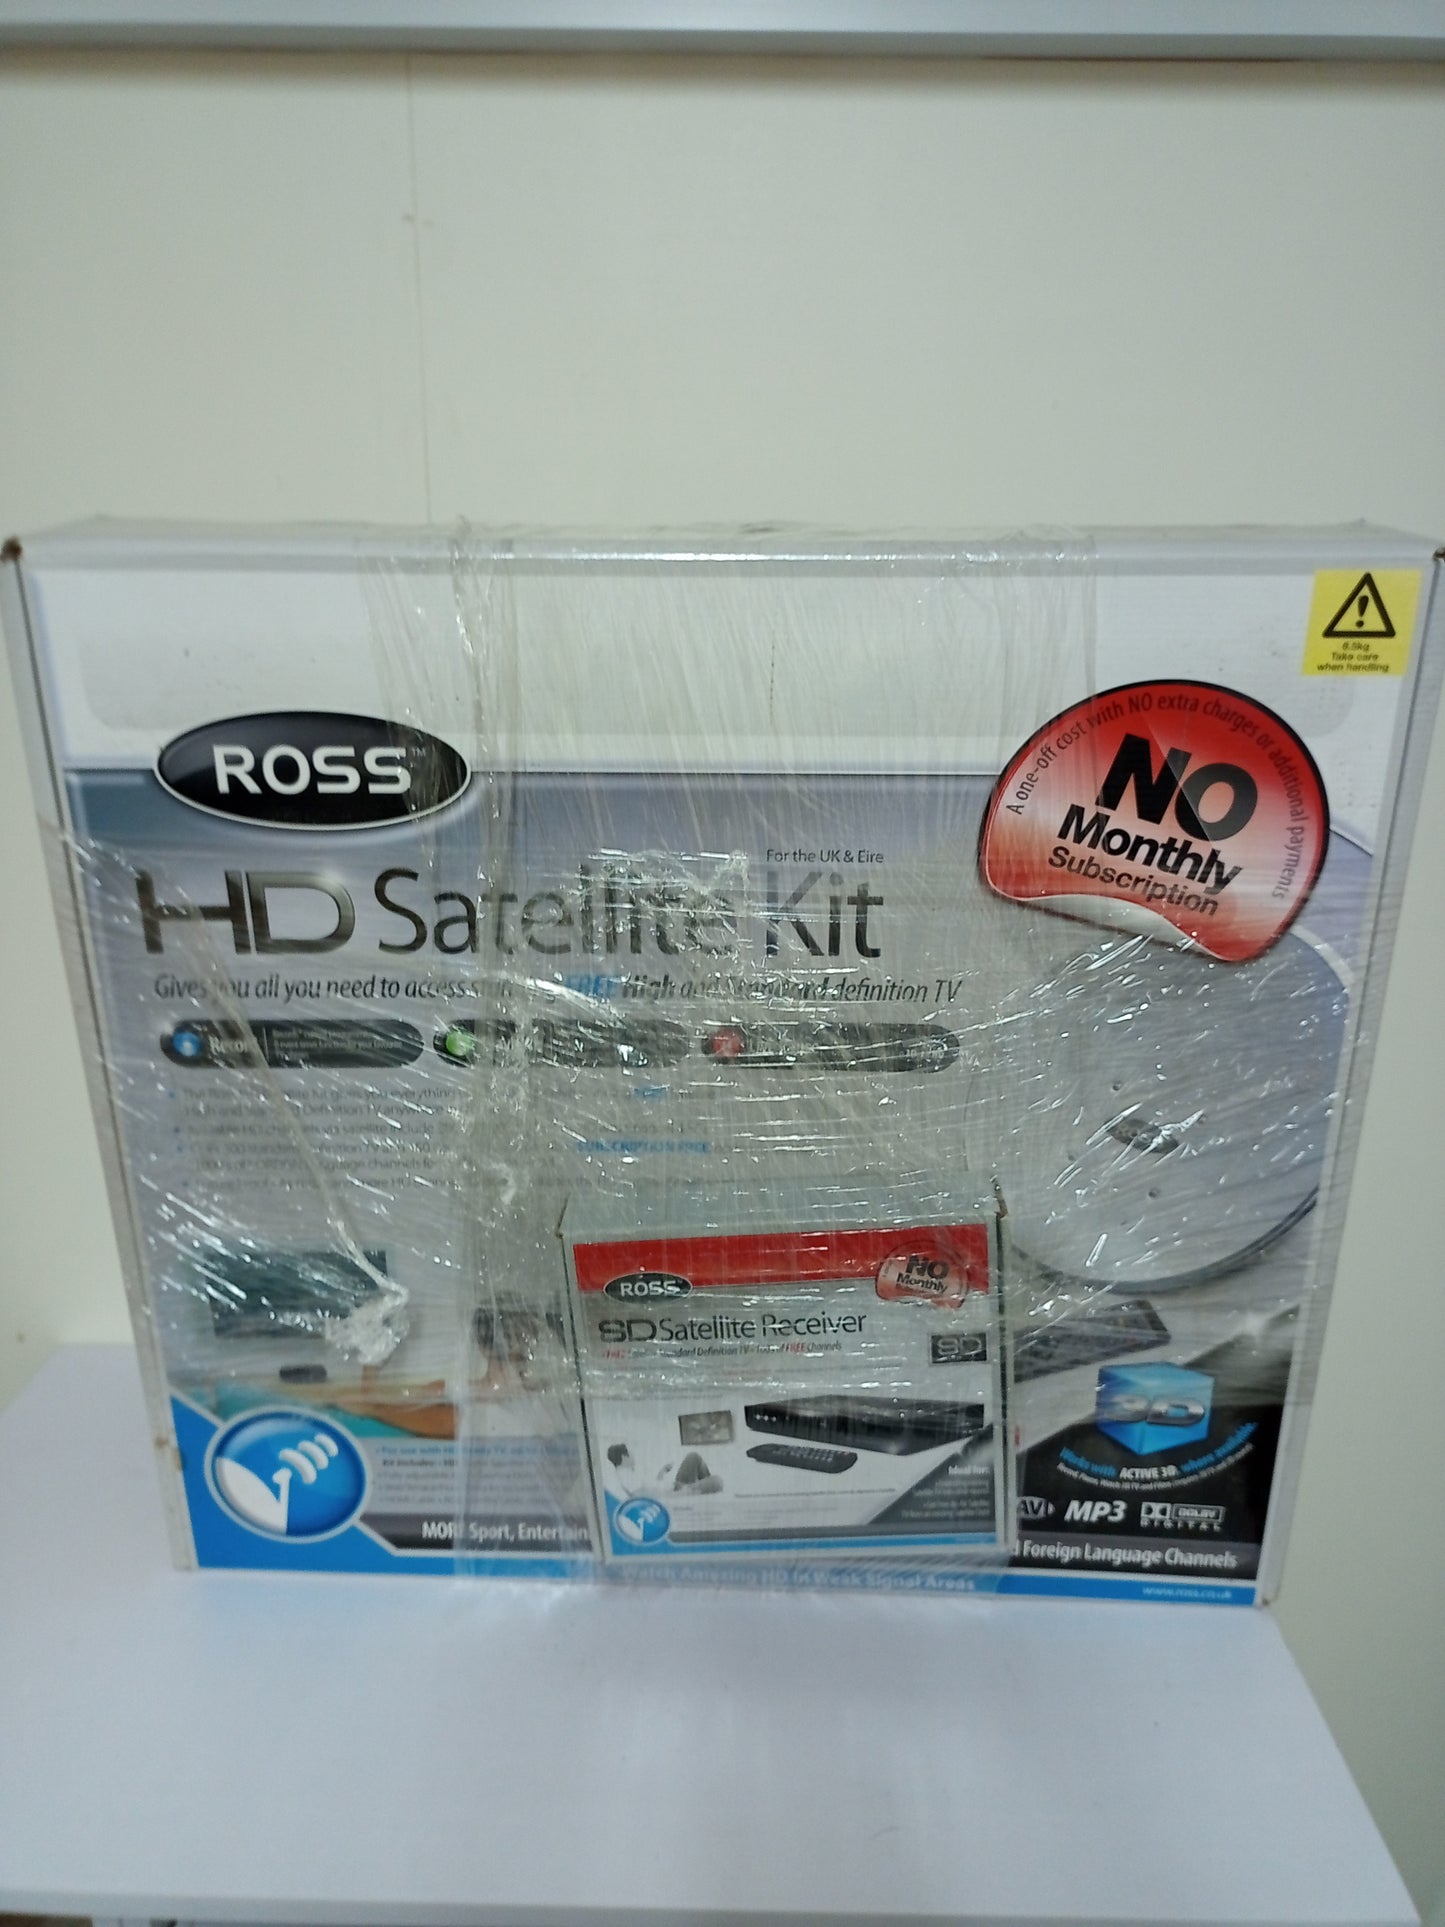 Ross HD Satelite Kit 